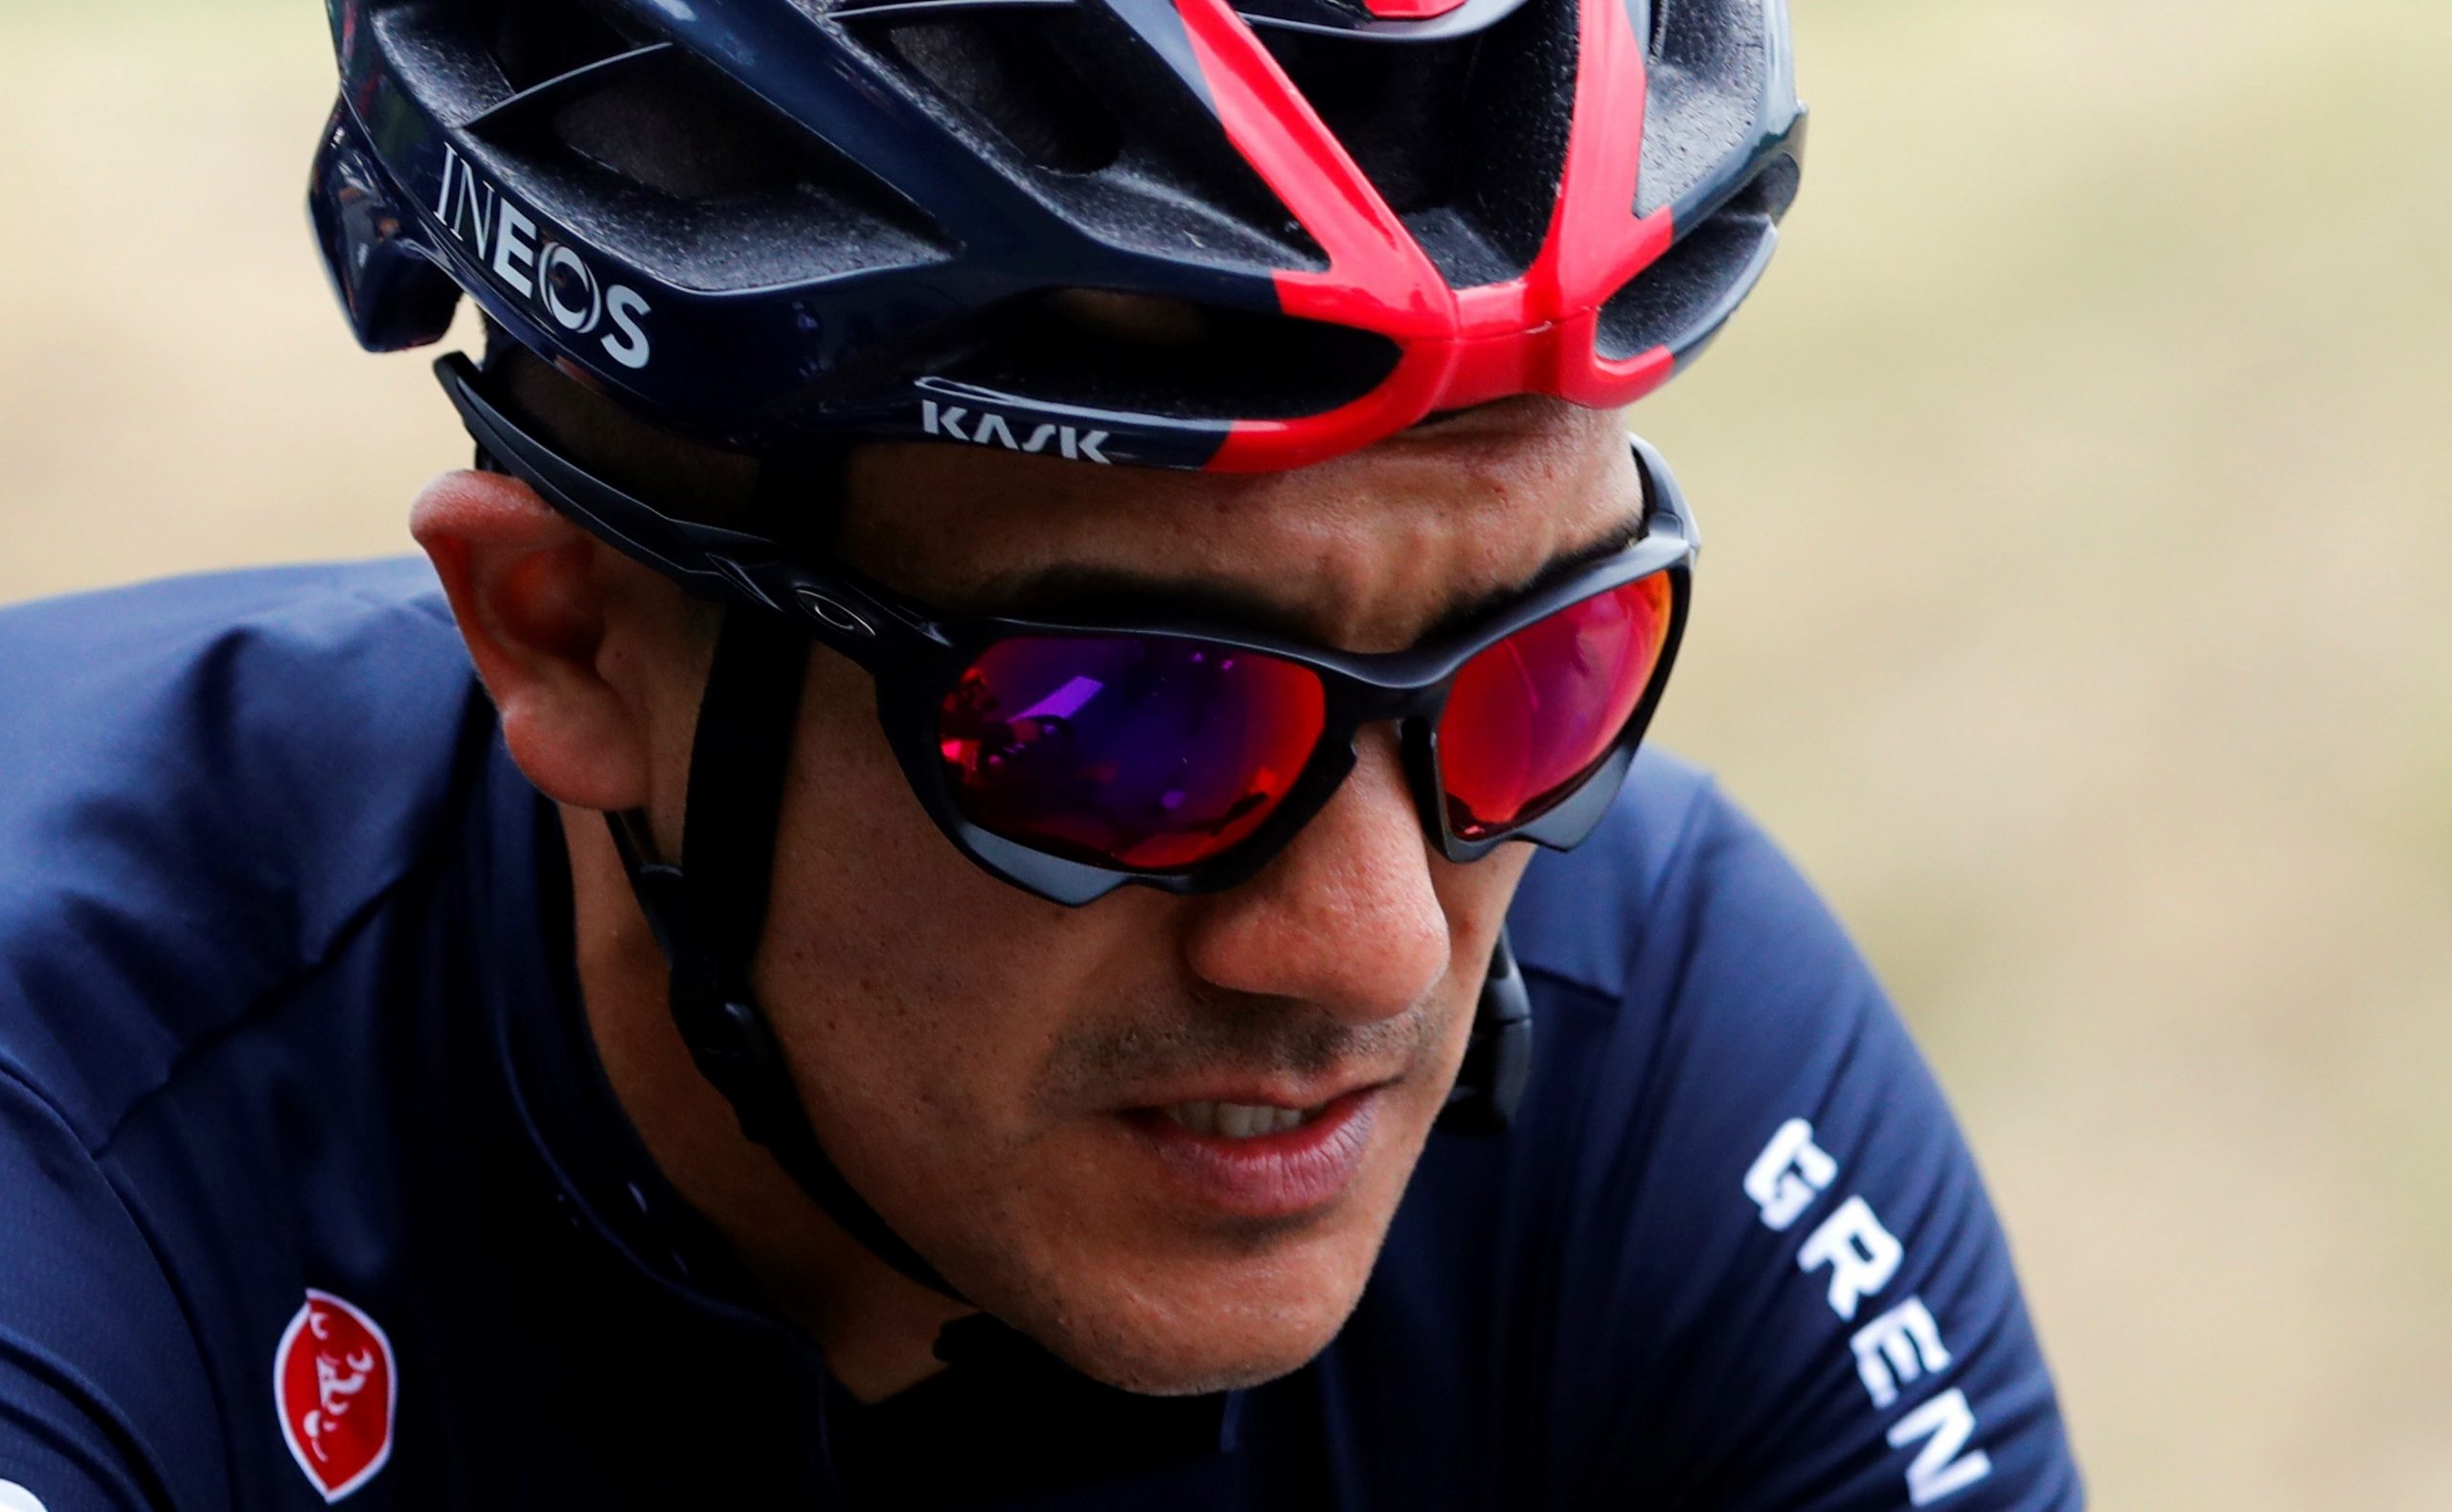 Richard Carapaz es uno de los favoritos para ganar el Tour de Francia. Foto: EFE